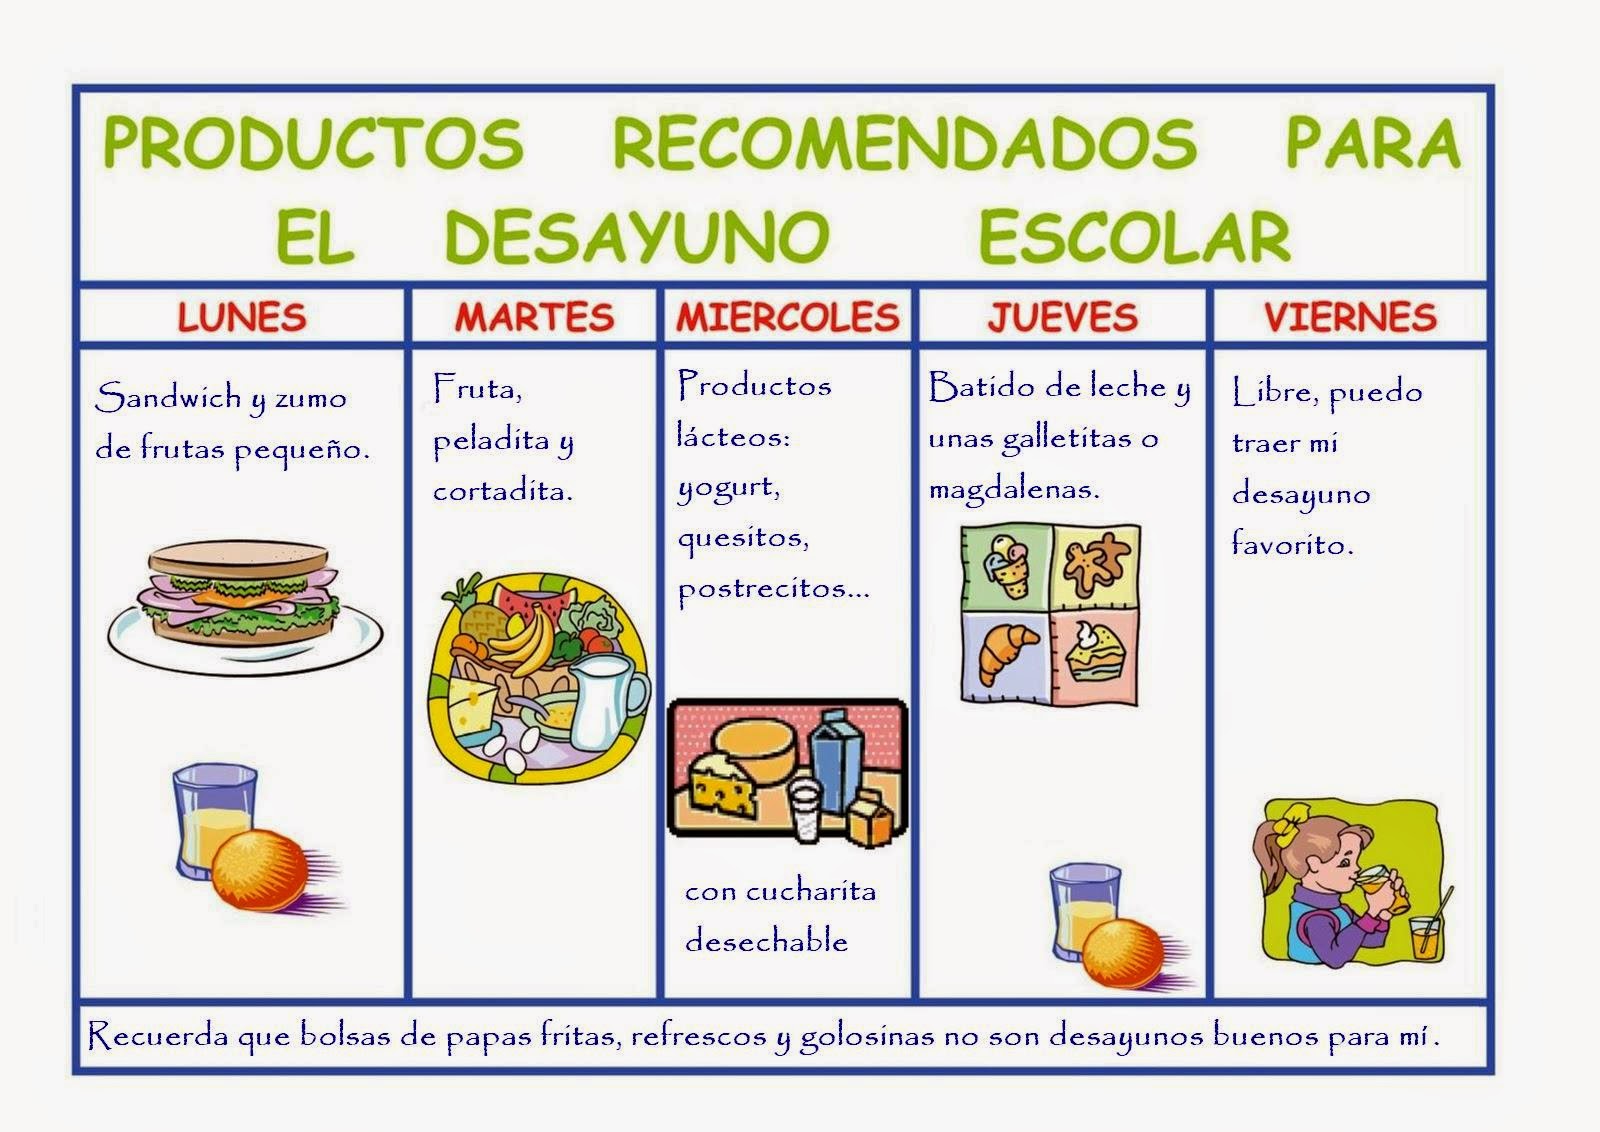 Productos recomendados para el desayuno escolar